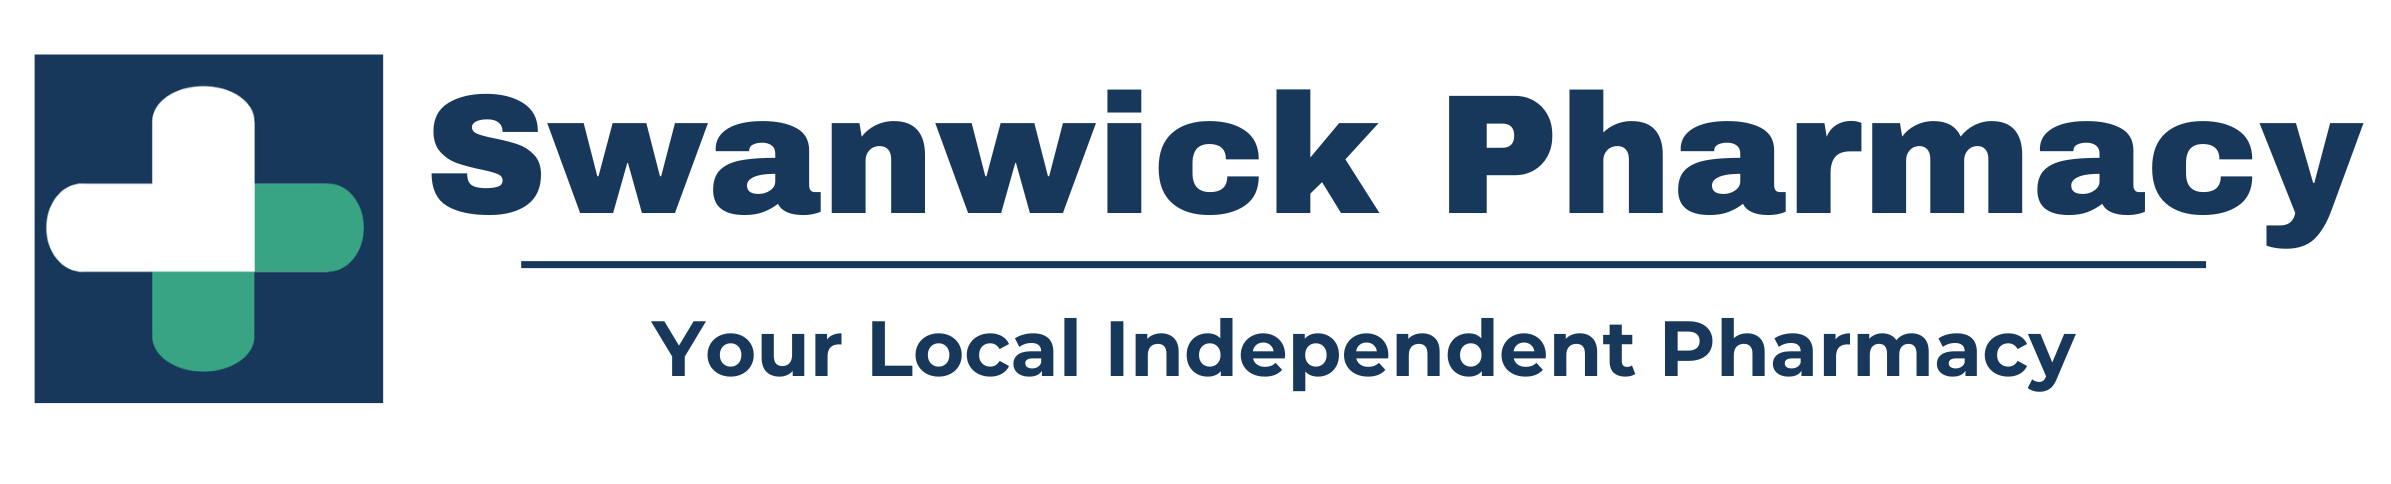 Swanwick Pharmacy